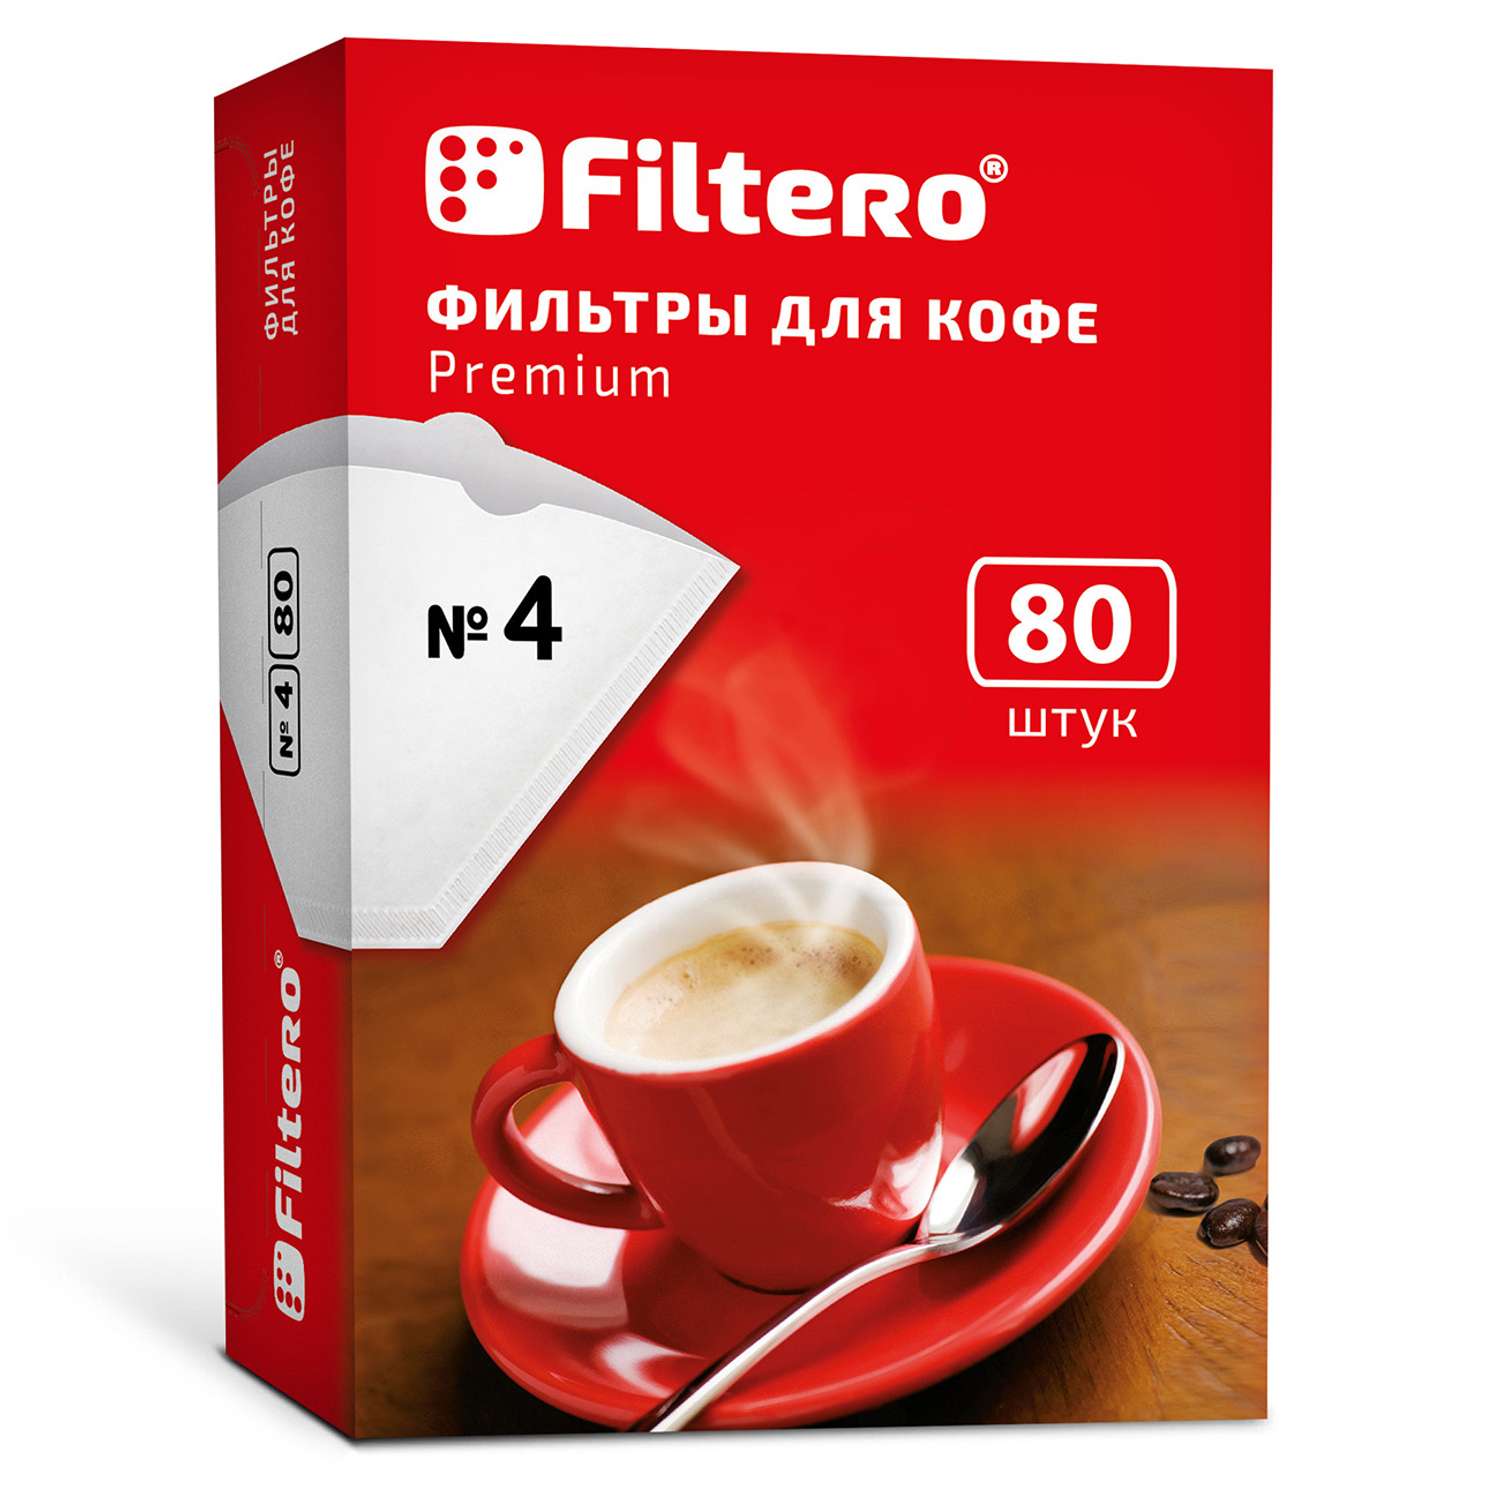 Комплект фильтров Filtero для кофеварки №4/80шт белые Premium - фото 1